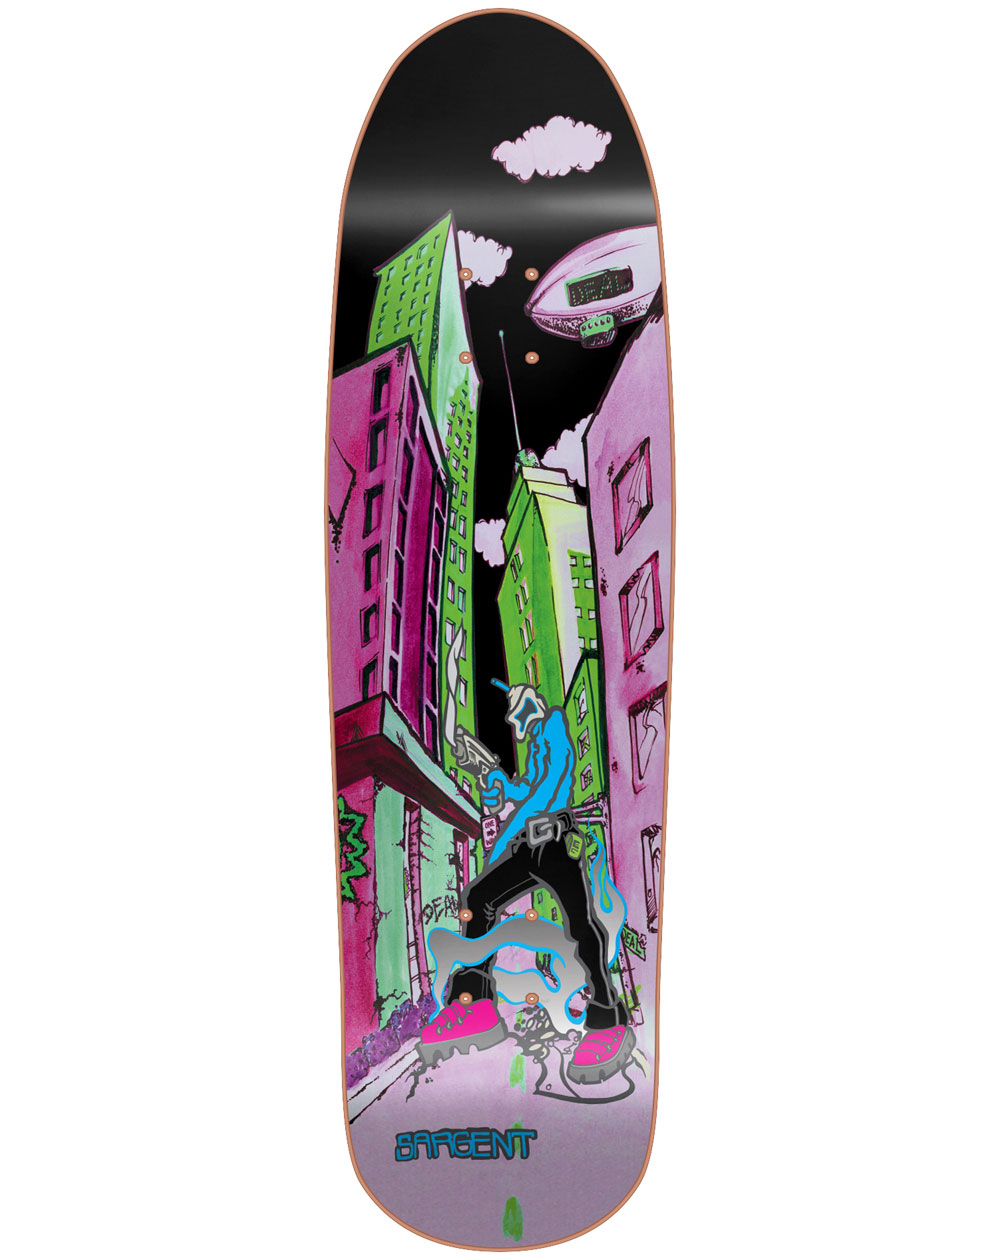 New Deal Sargent Invader 9.25" Skateboard Deck Neon